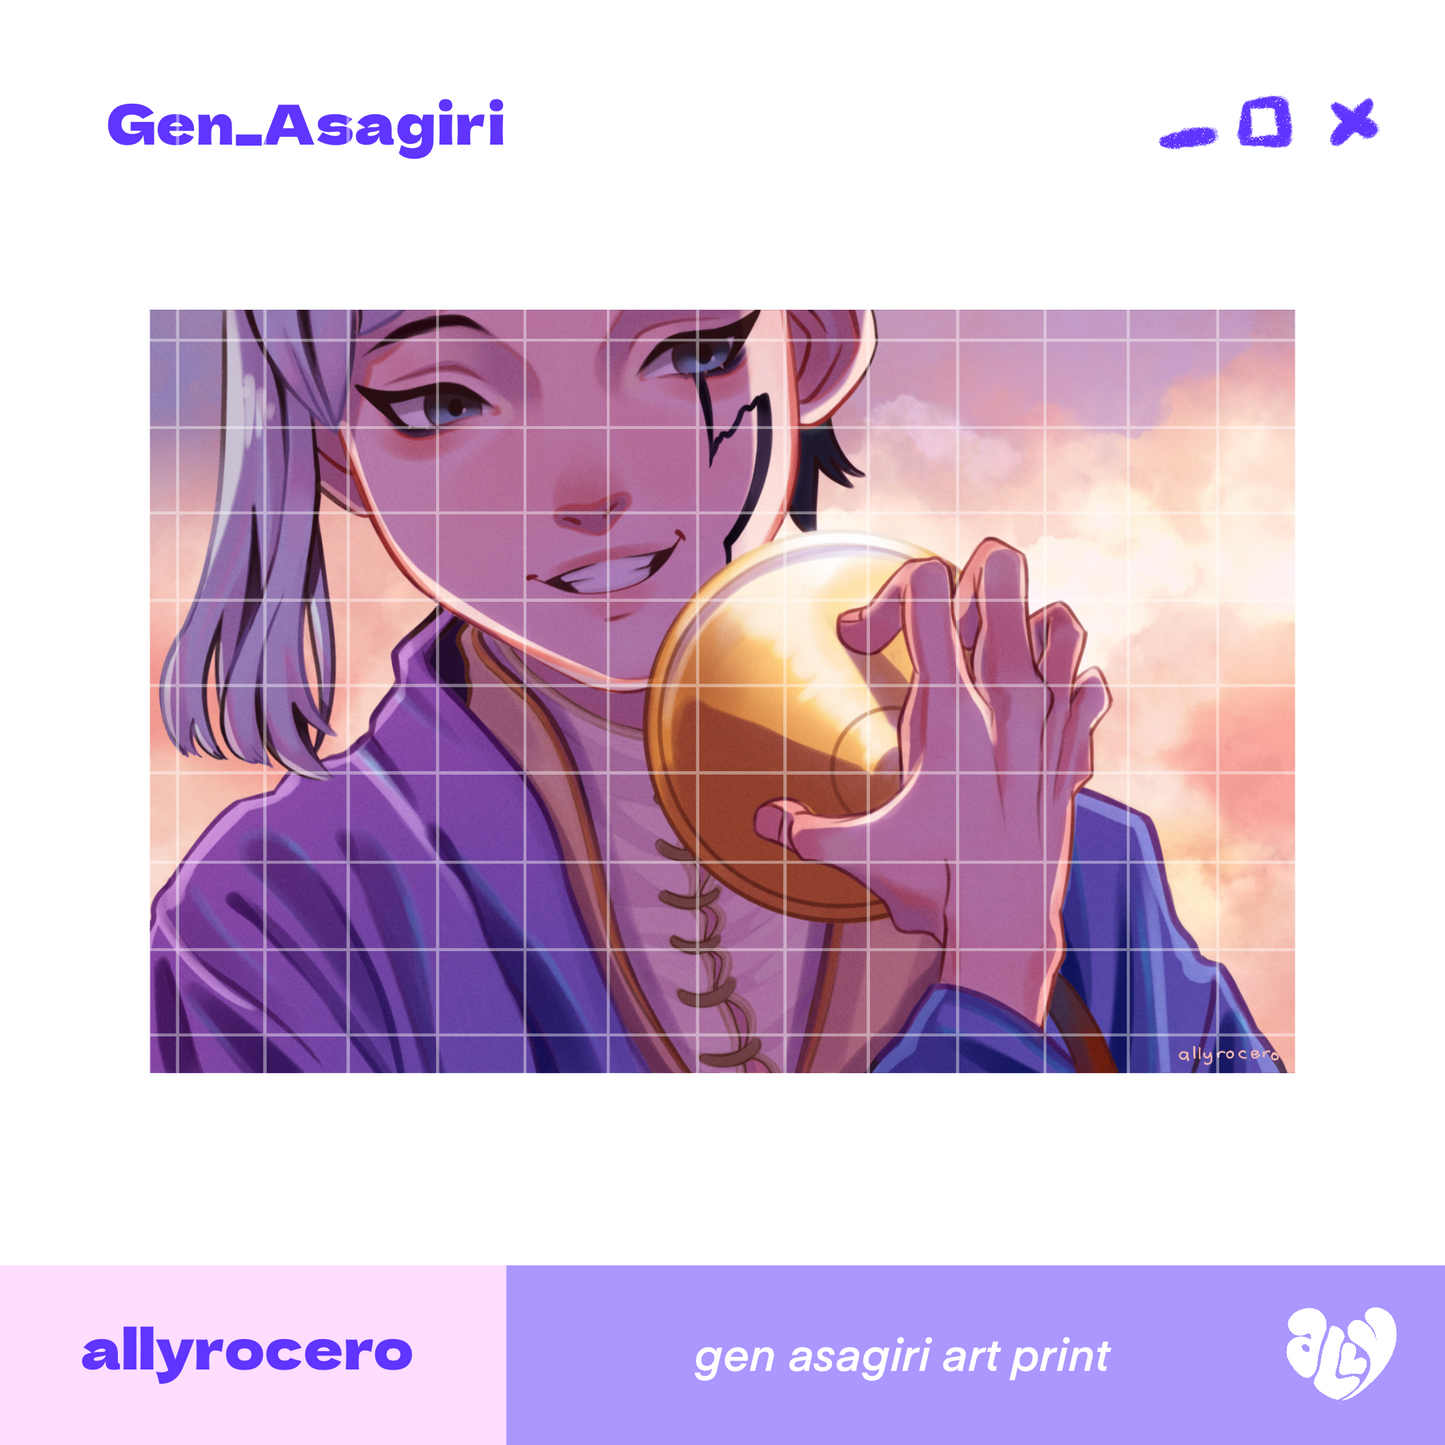 ALLYRCR - Gen Asagiri Art Print